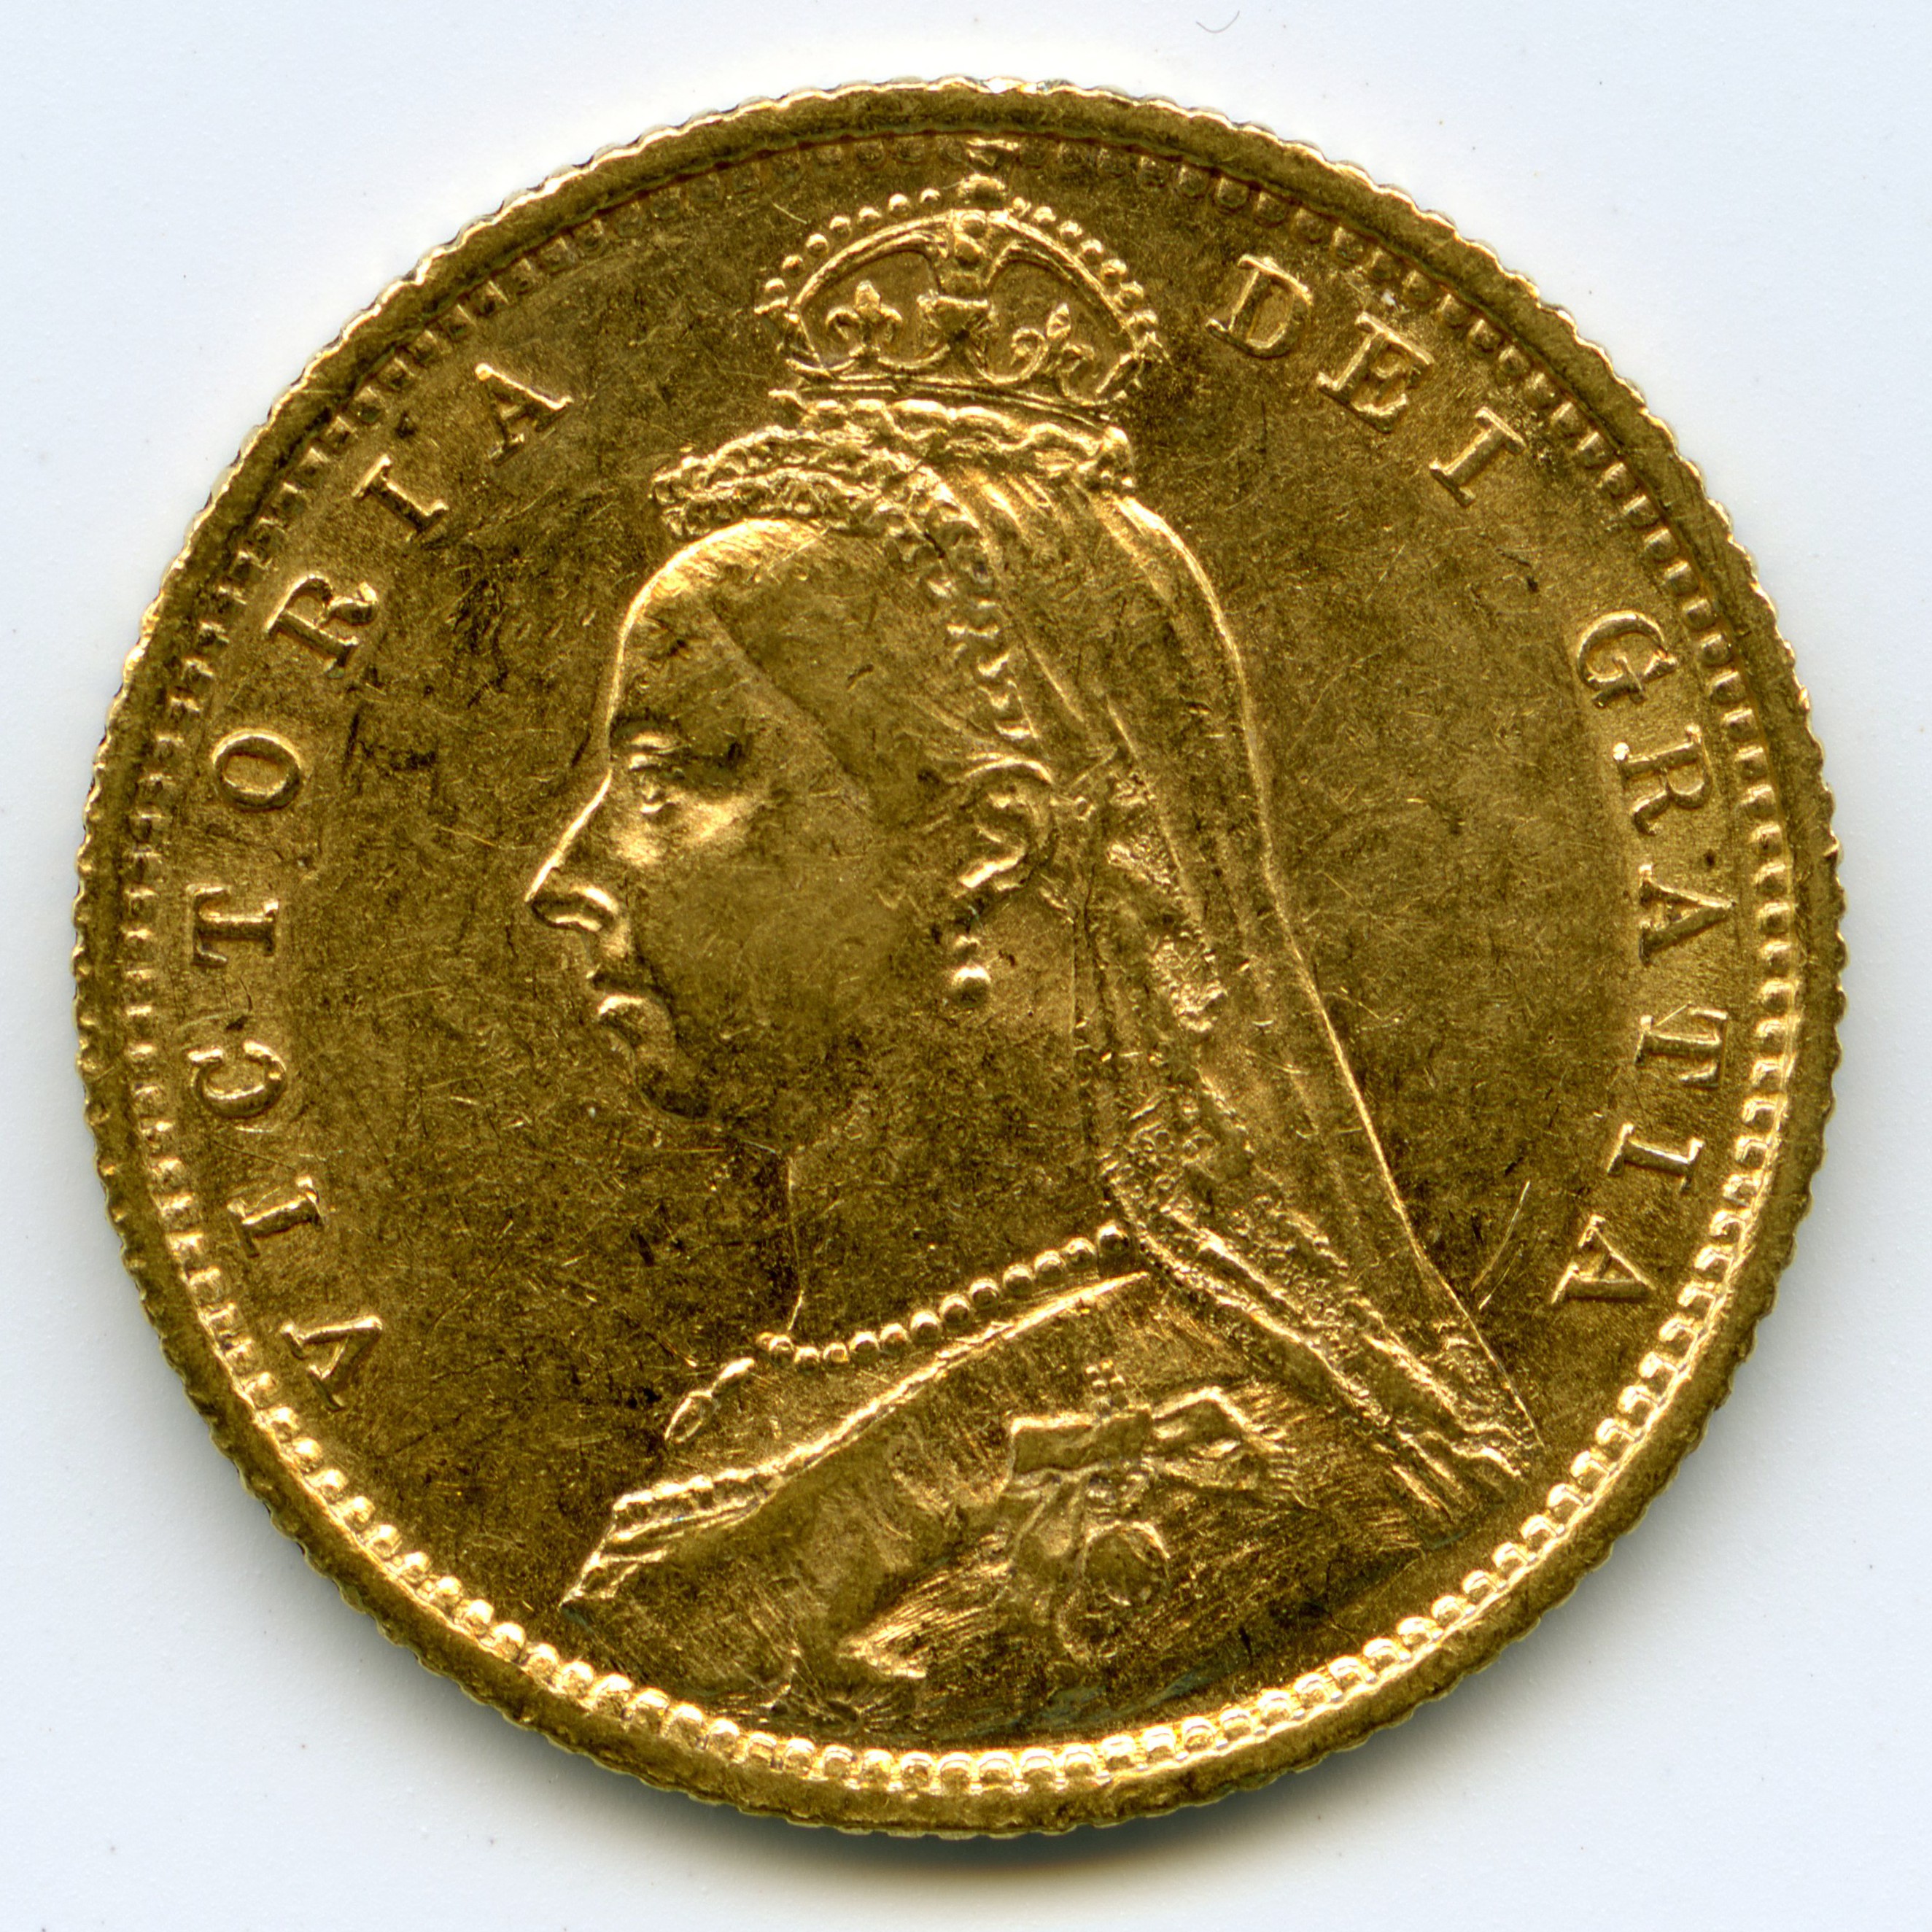 Grande-Bretagne - 1/2 Souverain - 1892 avers